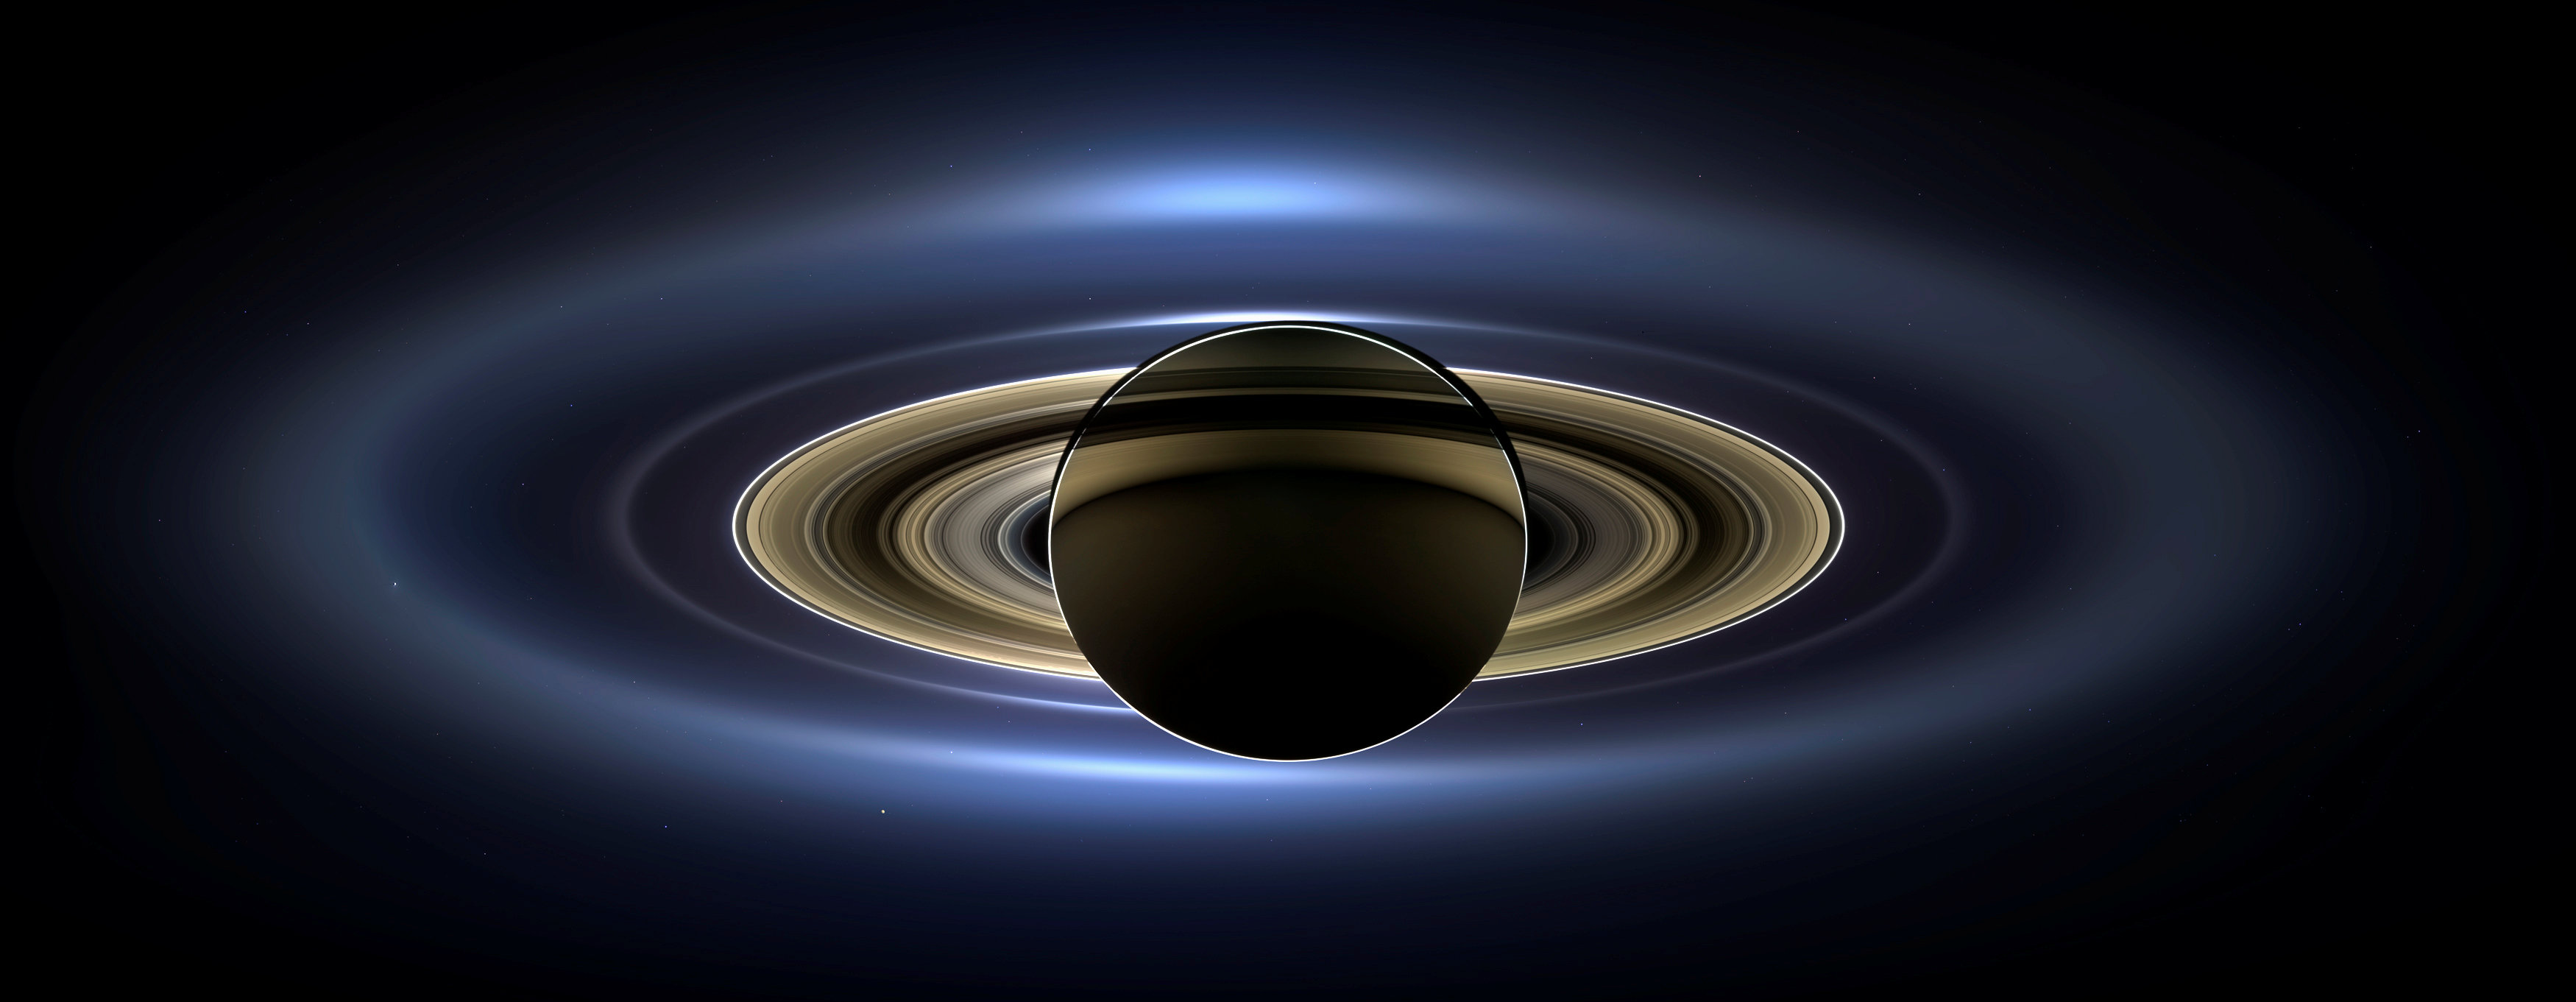 Los anillos de Saturno son principalmente "grandes trozos de hielo", de acuerdo a los expertos (NASA/JPL-Caltech/SSI/Handout via REUTERS)